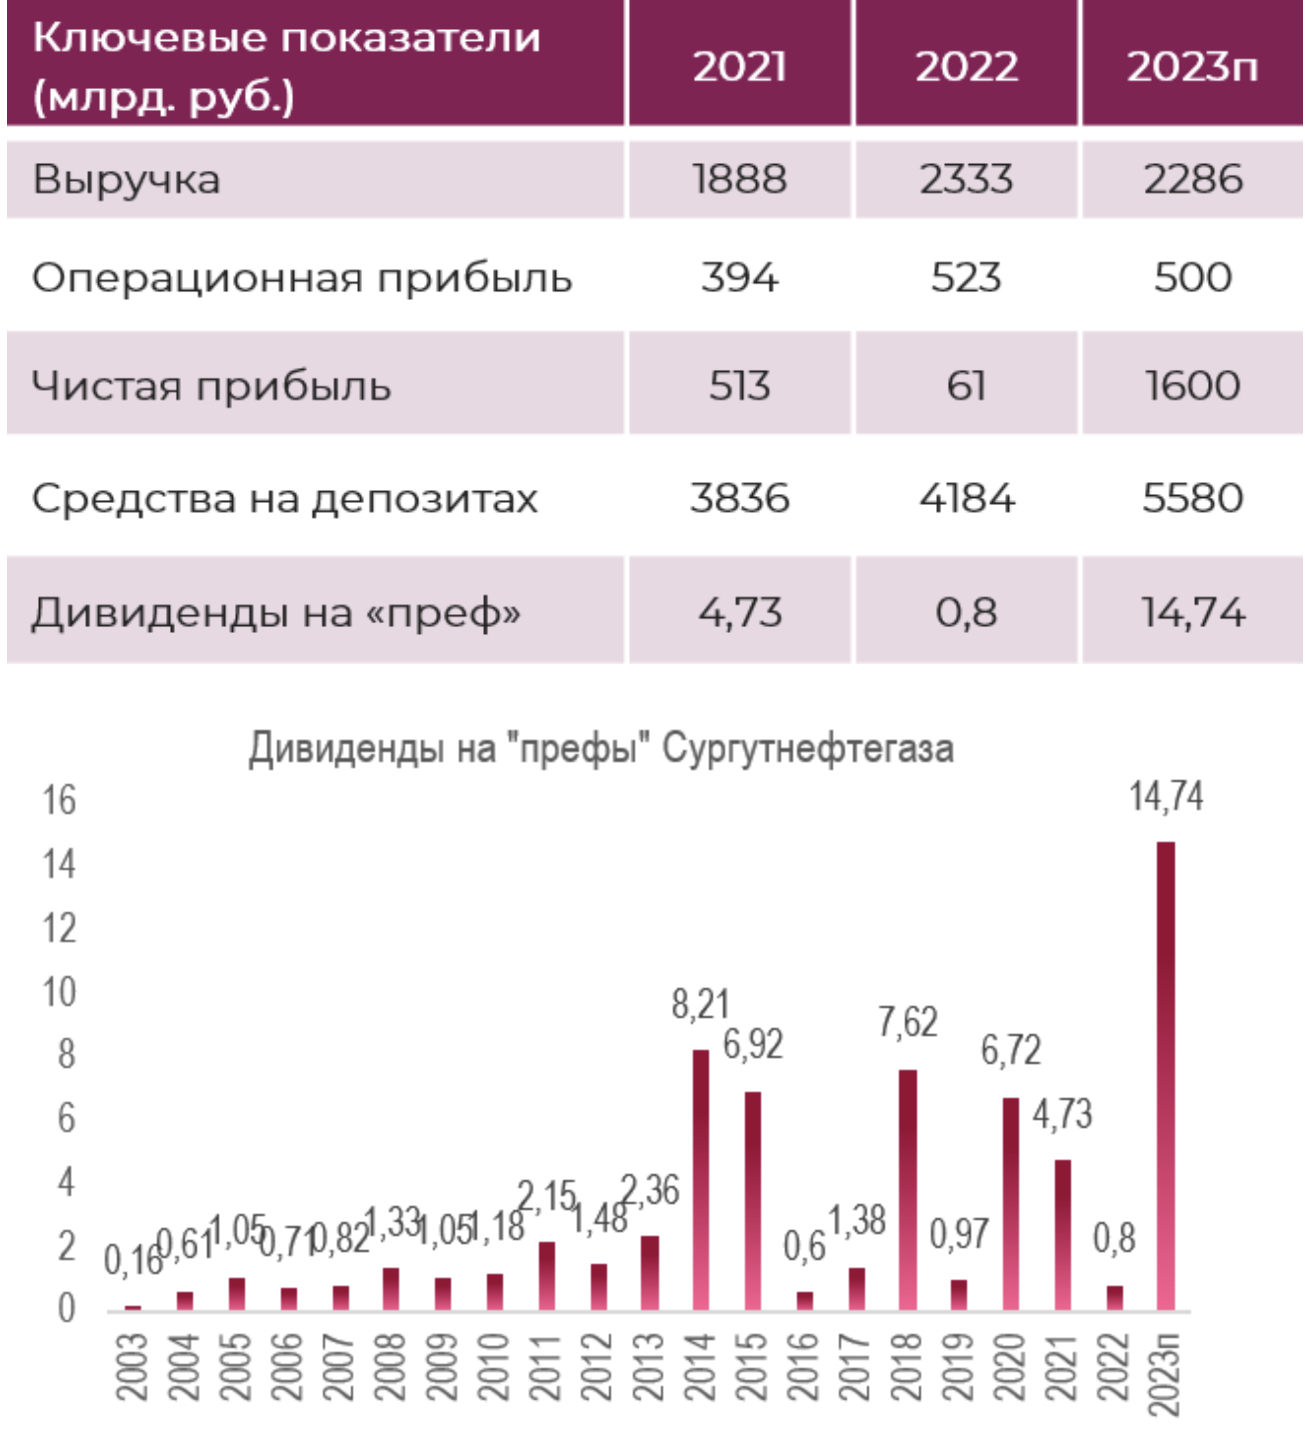 "Префы" Сургутнефтегаза - самые высокие дивиденды за 2023?